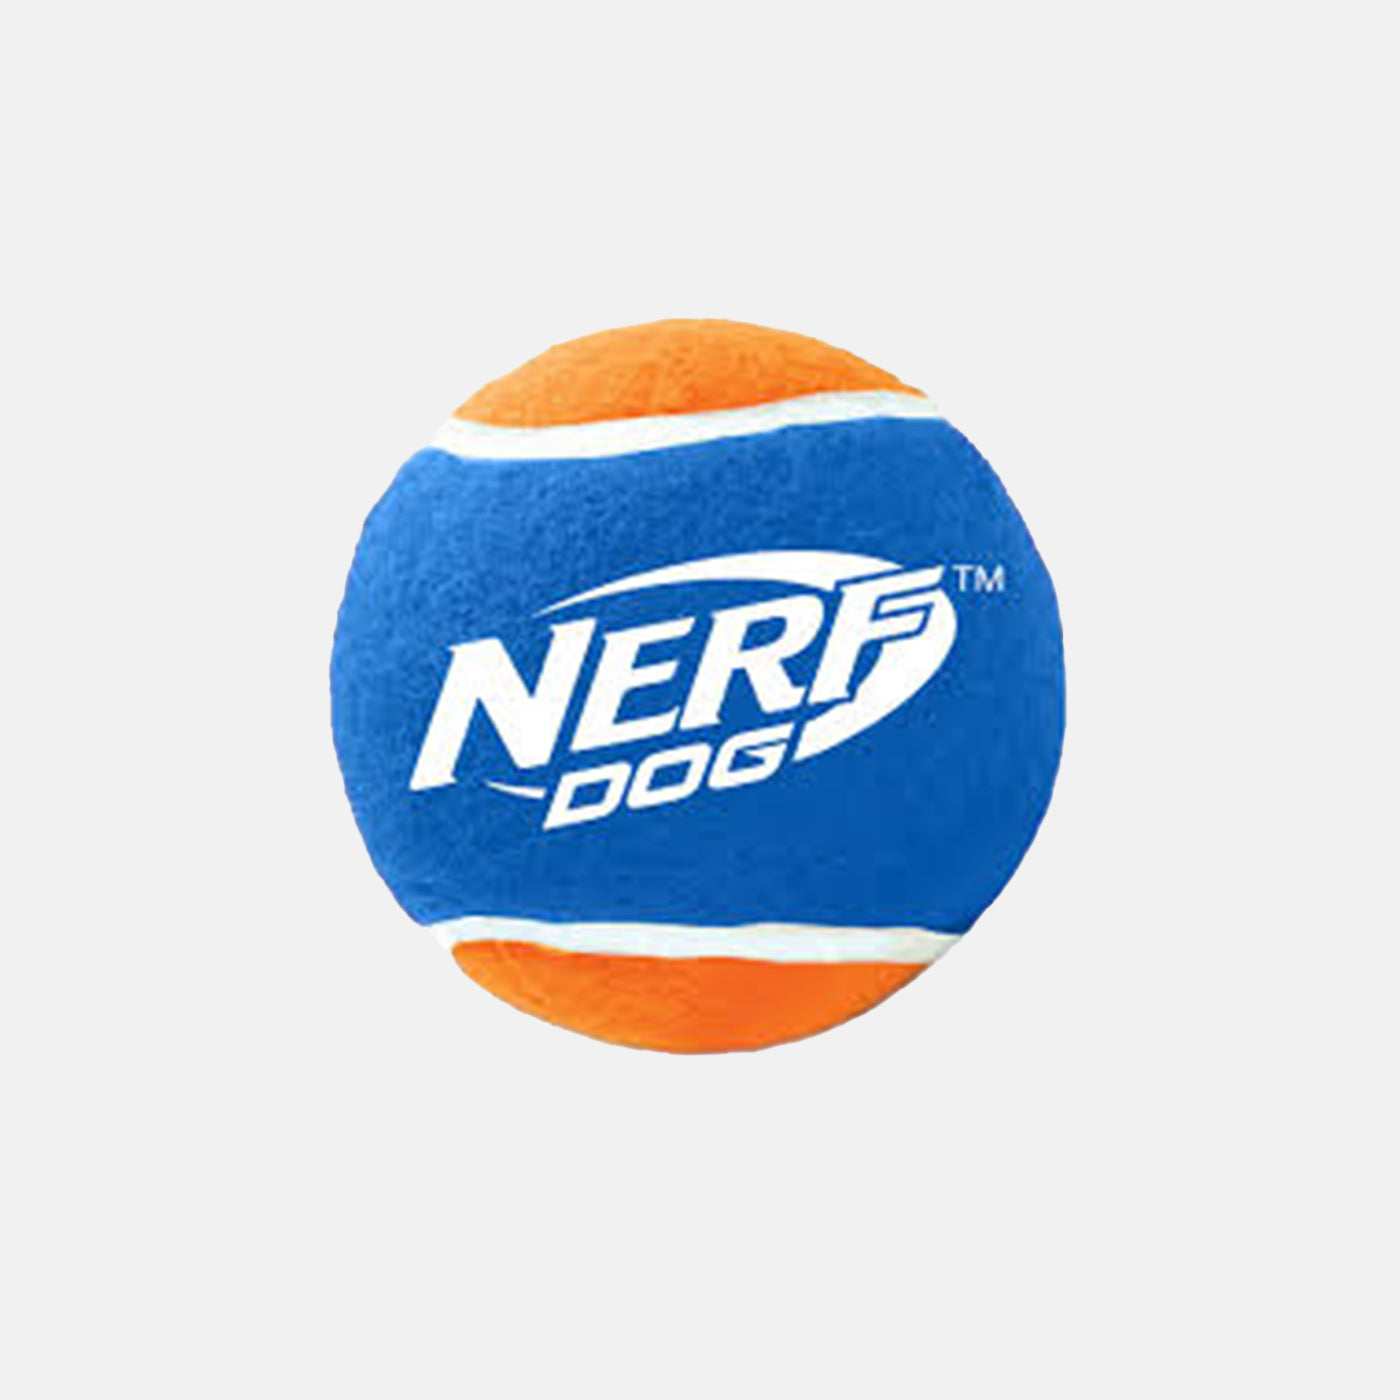 NERF Dog Blaster Distance Balls